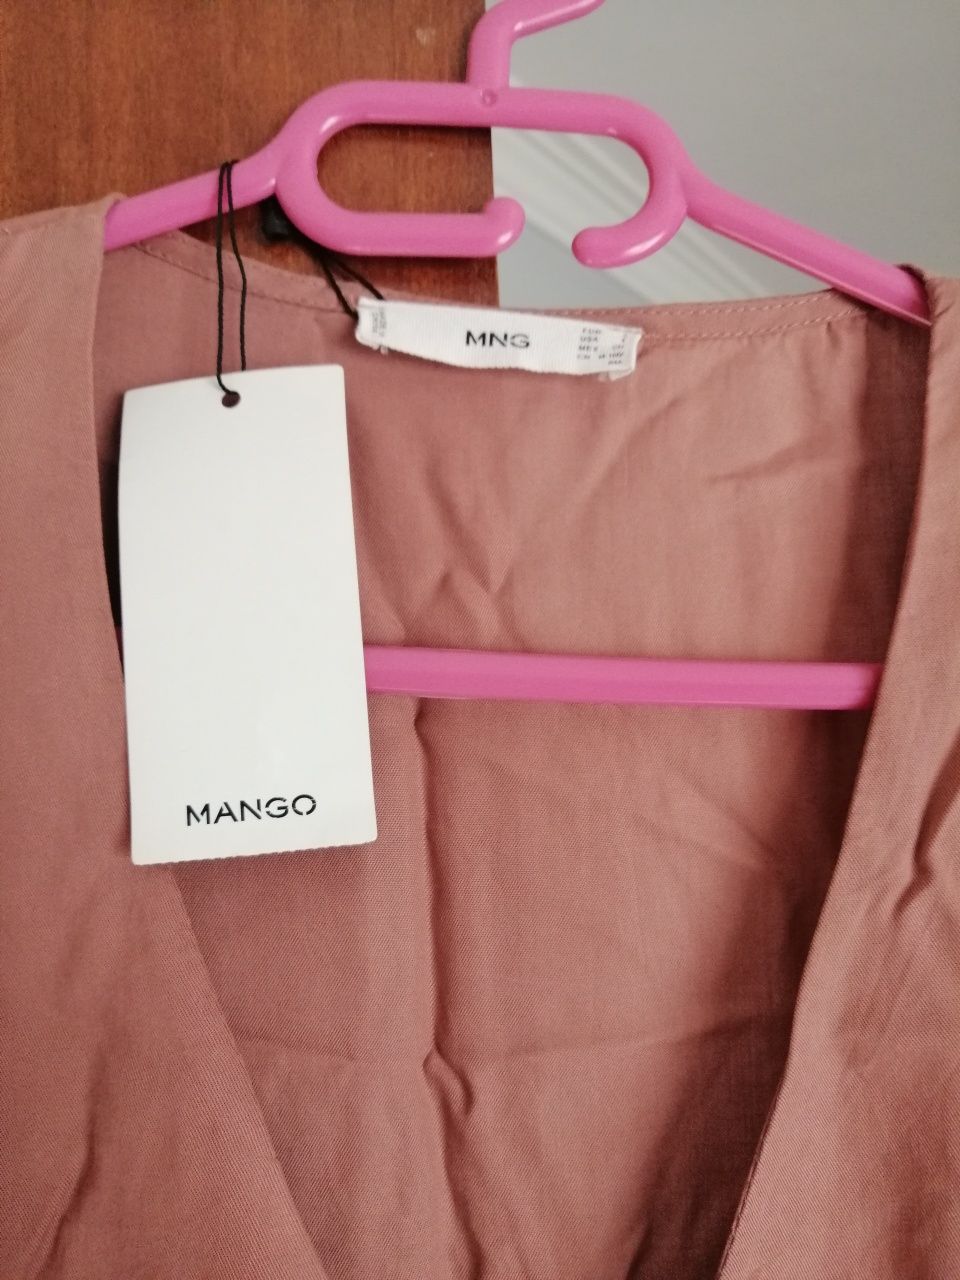 Vestido mango com etiqueta